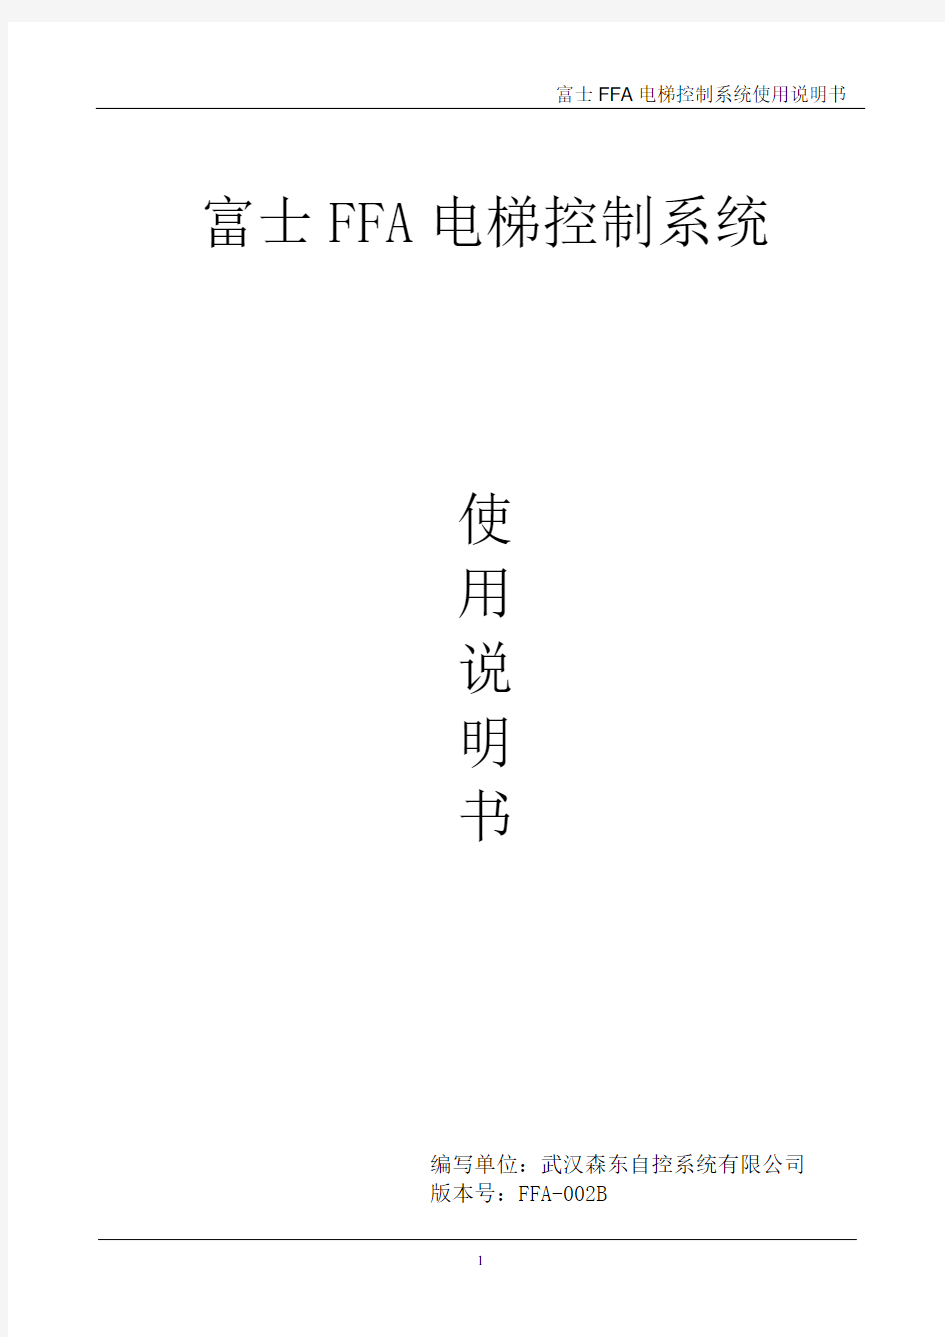 富士FFA控制系统说明书(B系统)